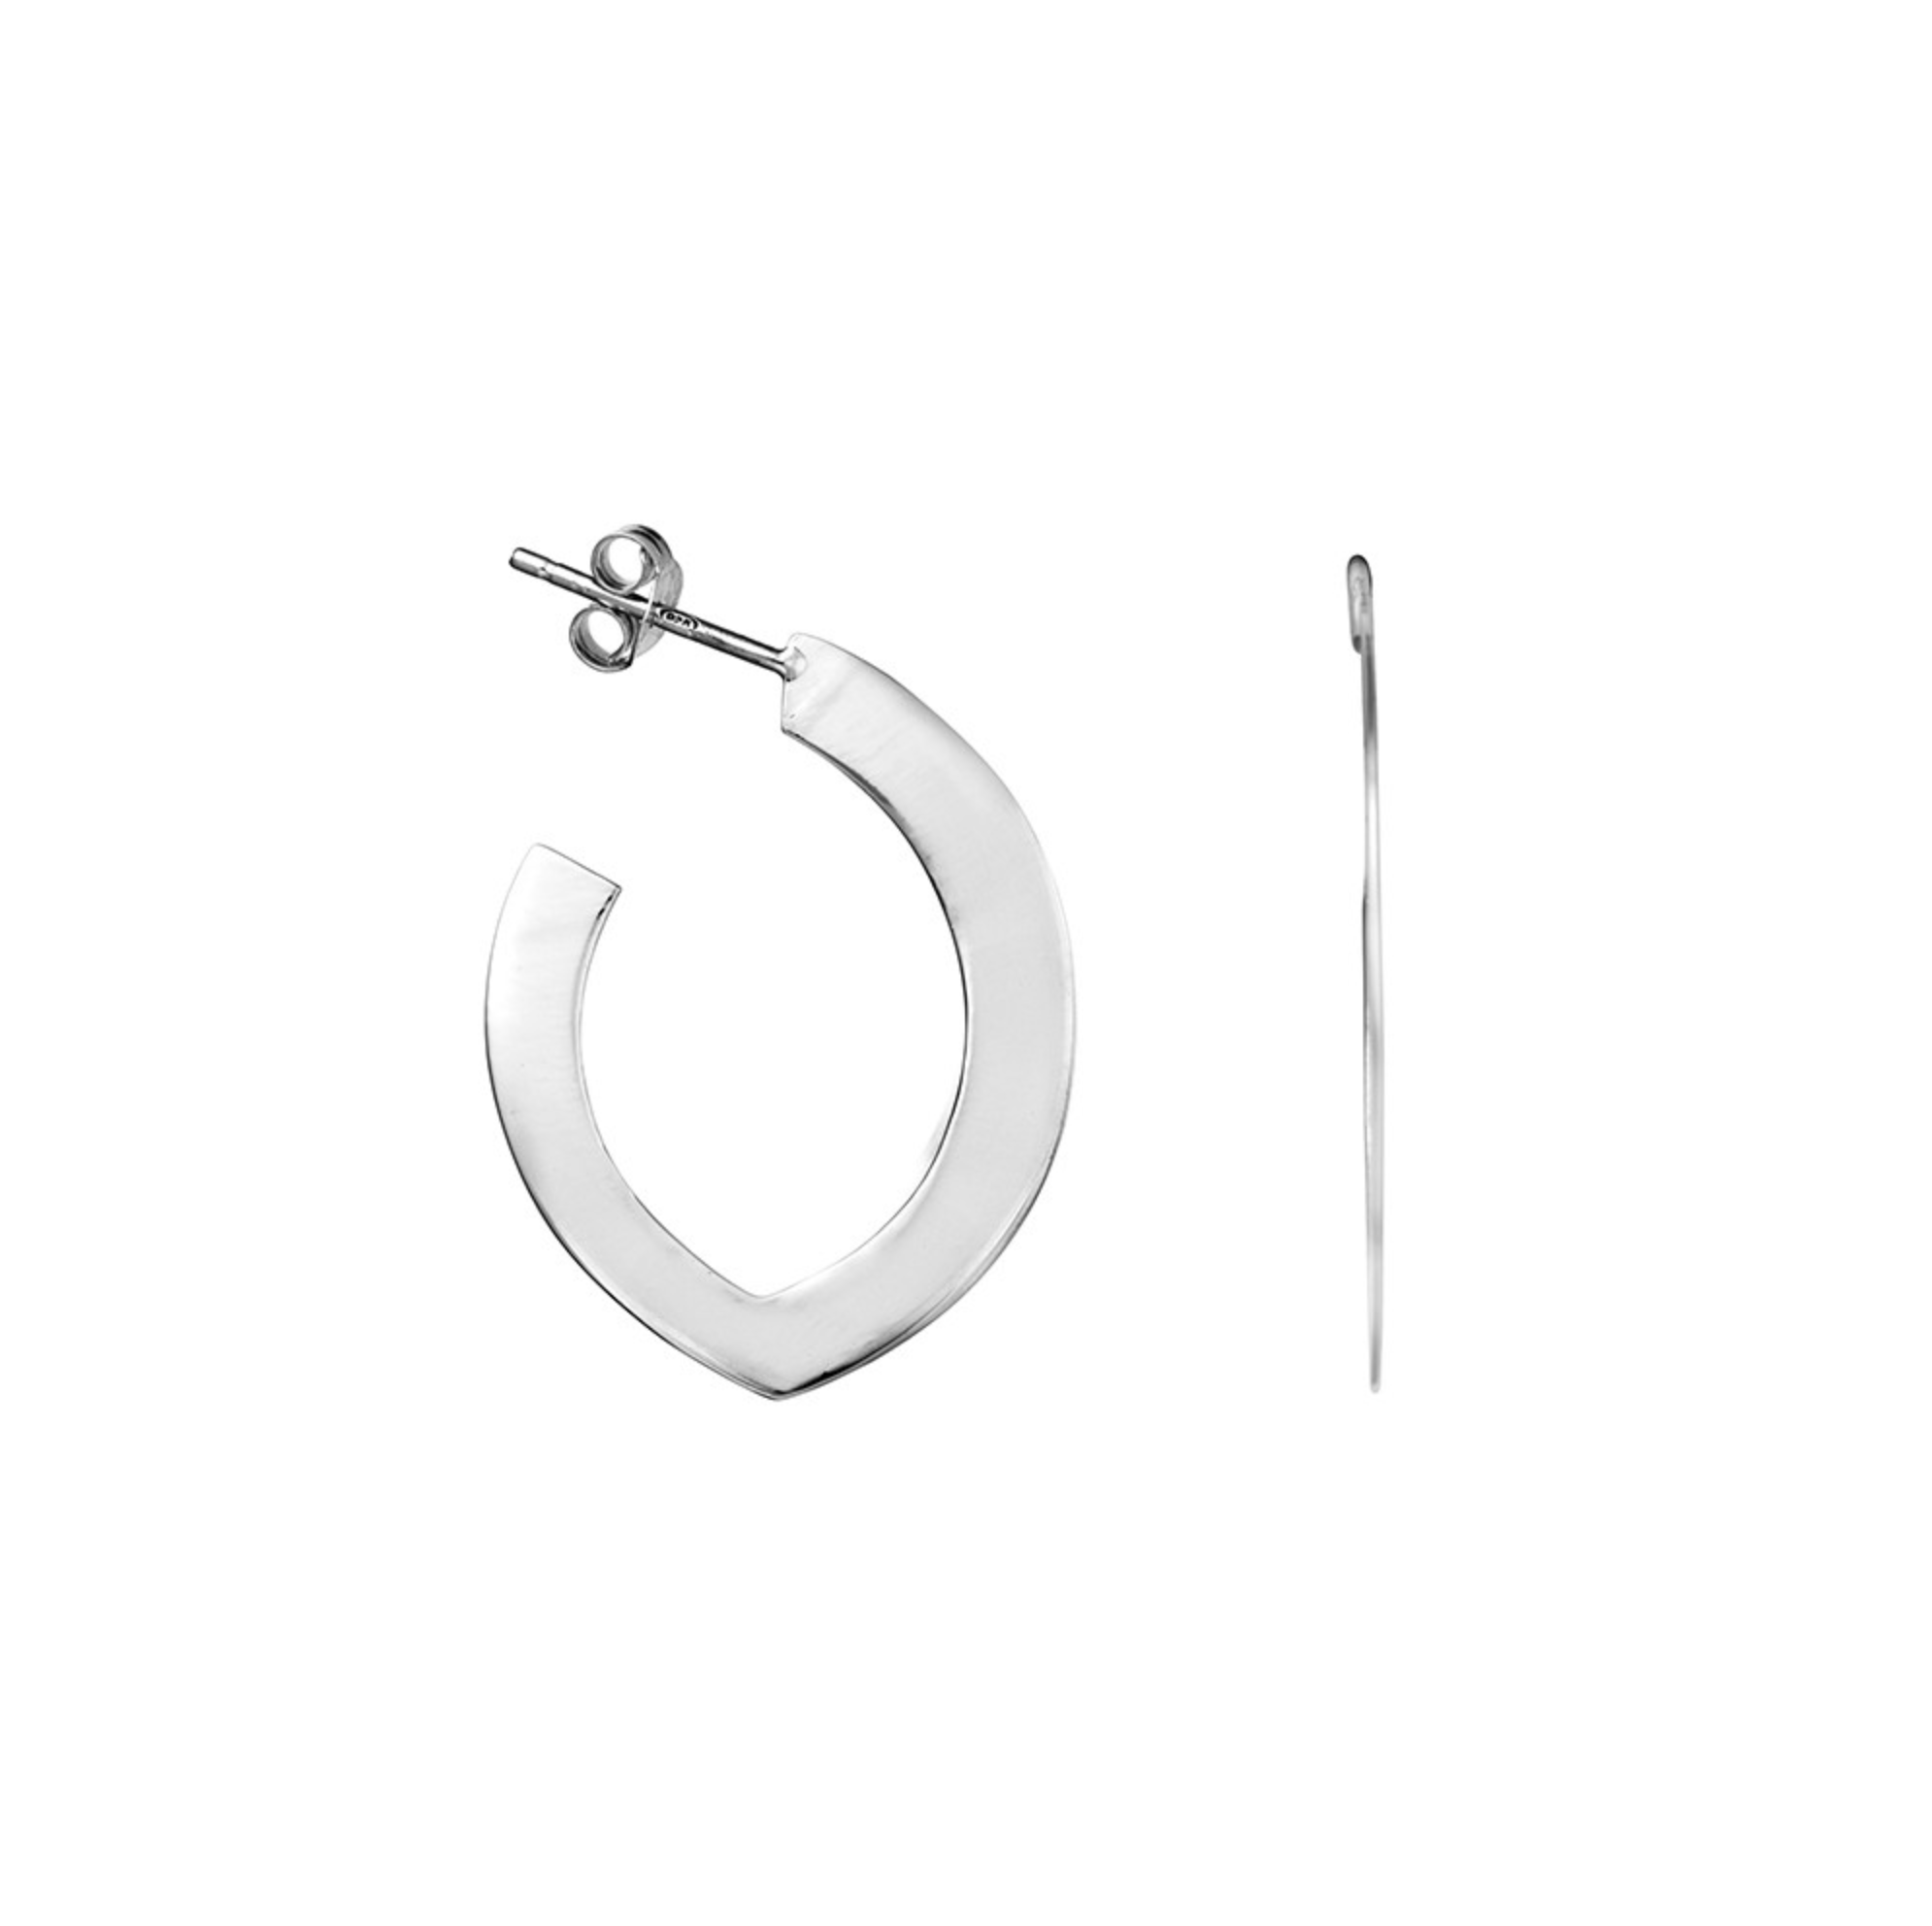 Sterling Silver flat open shape earrings